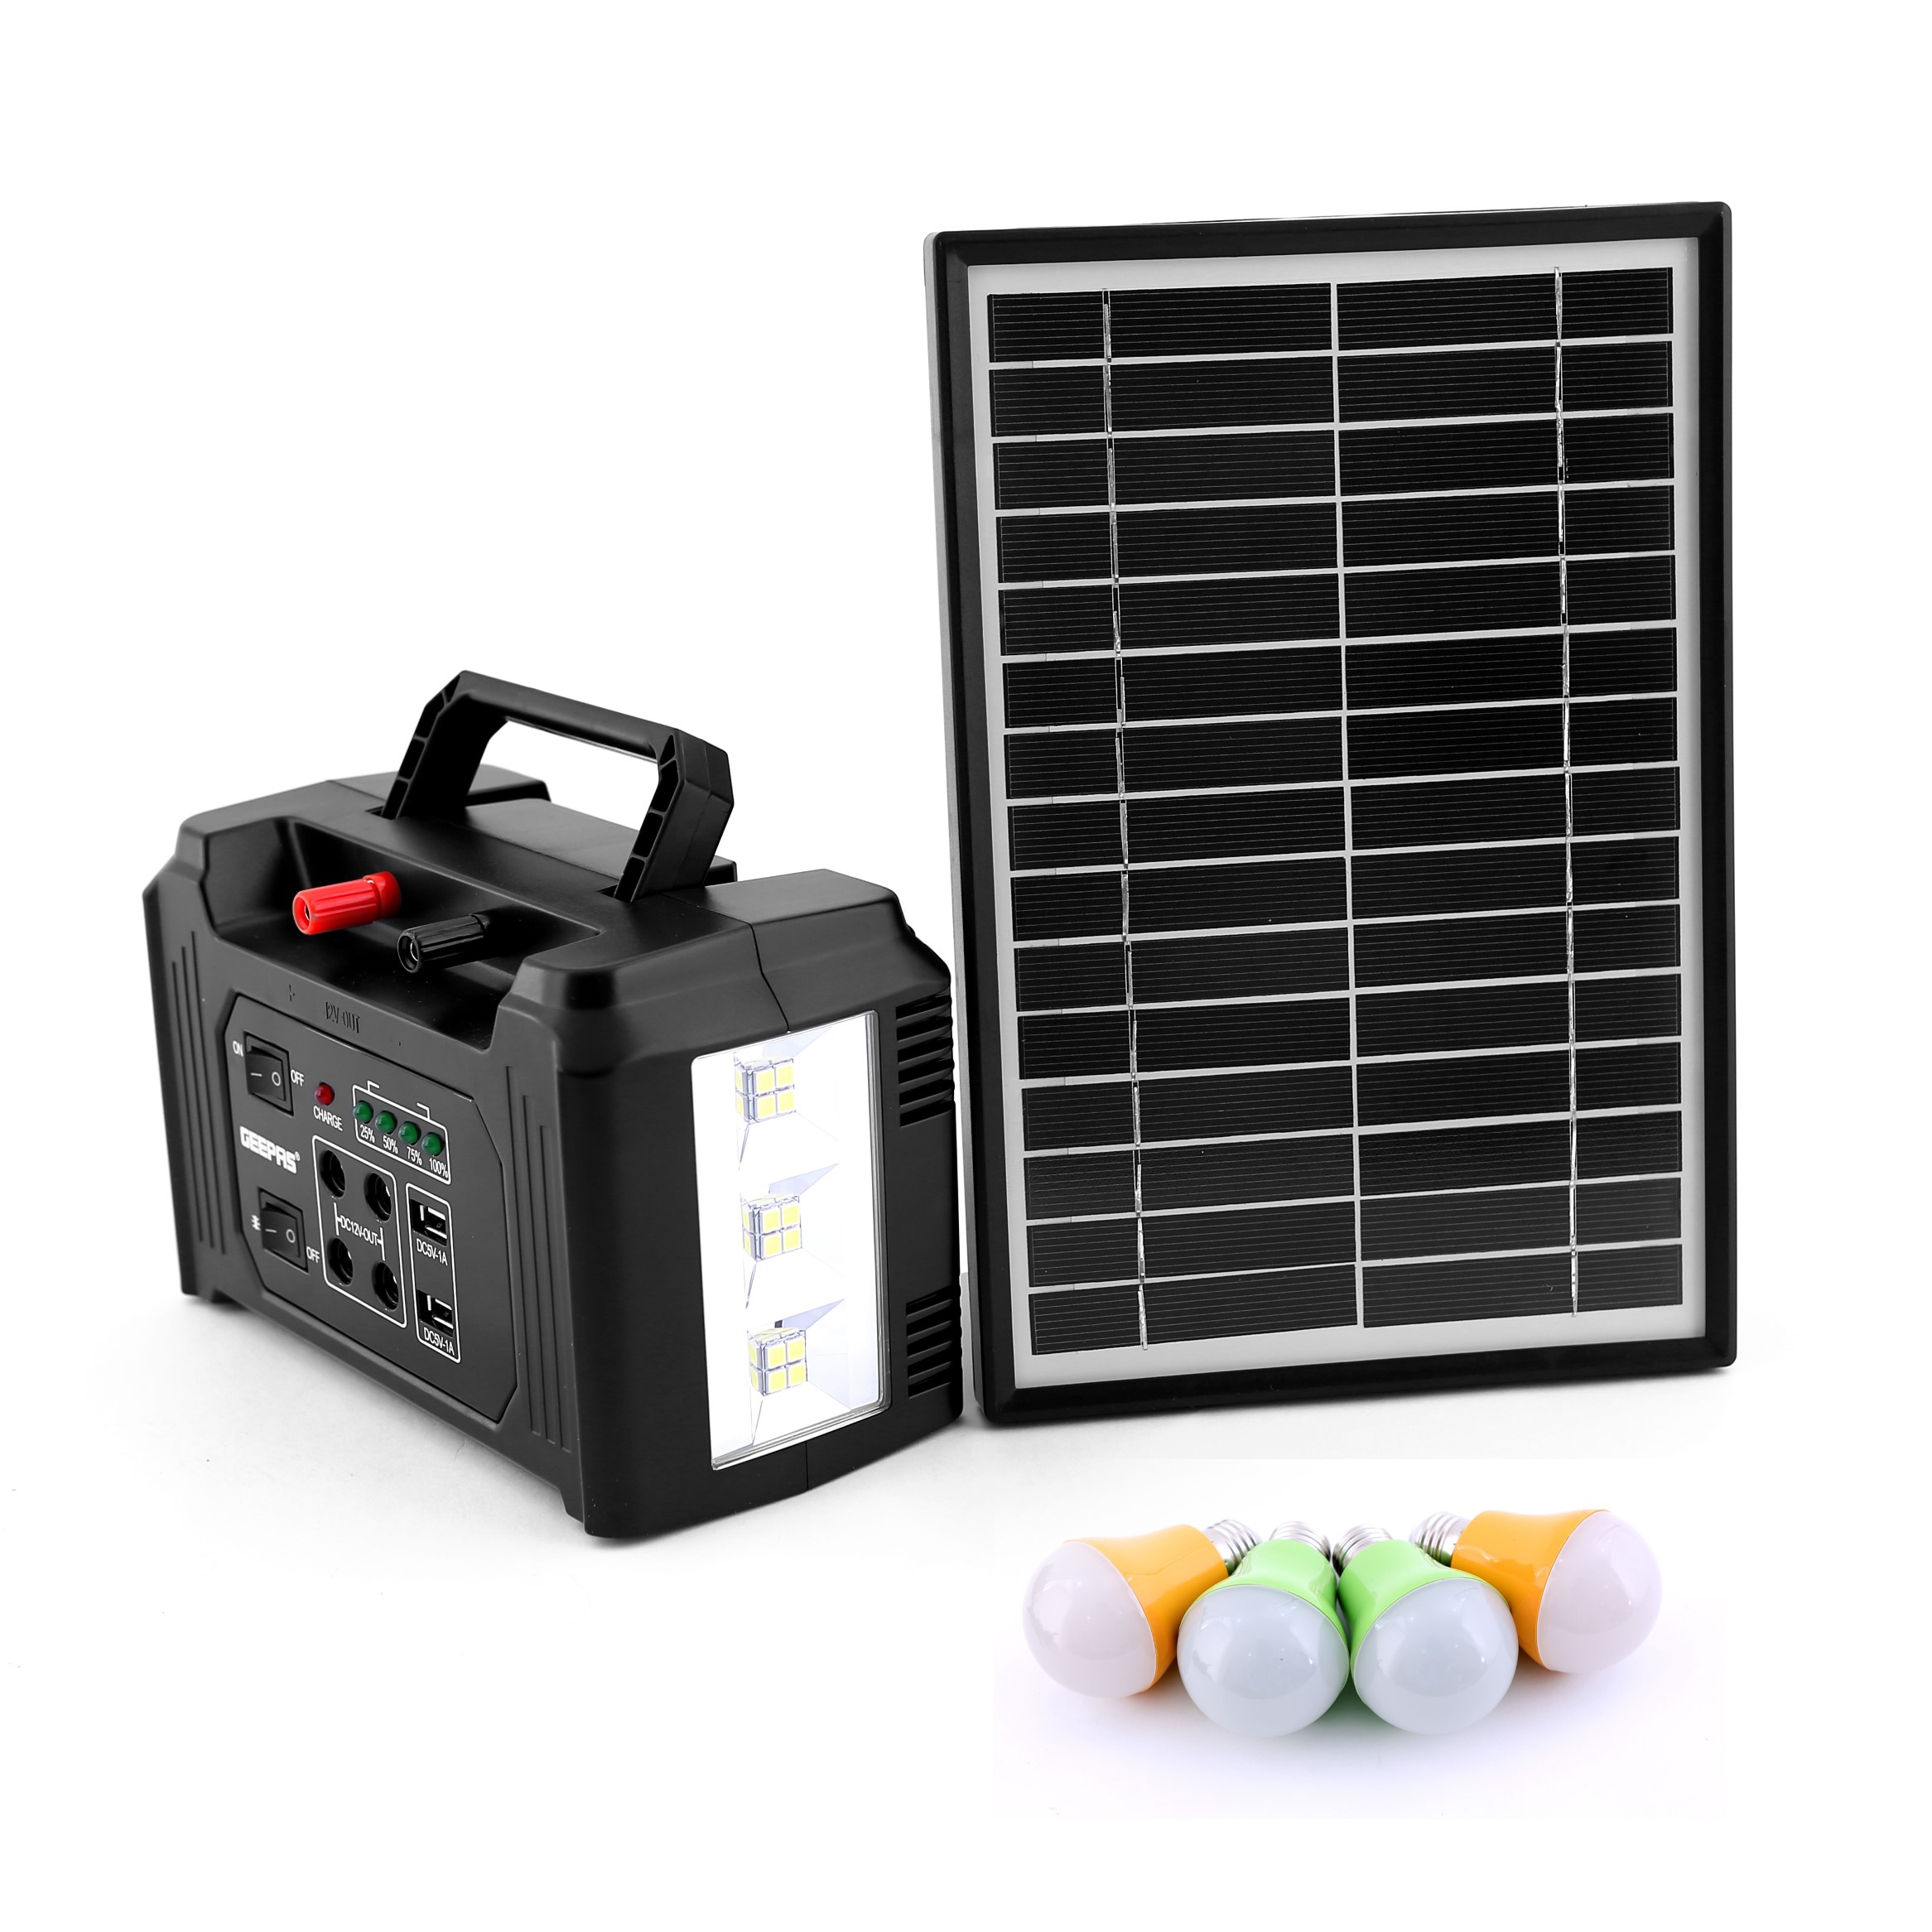 بطارية متنقلة للرحلات جيباس 7000 مللي Geepas Power Caster With Solar Panel - 1}